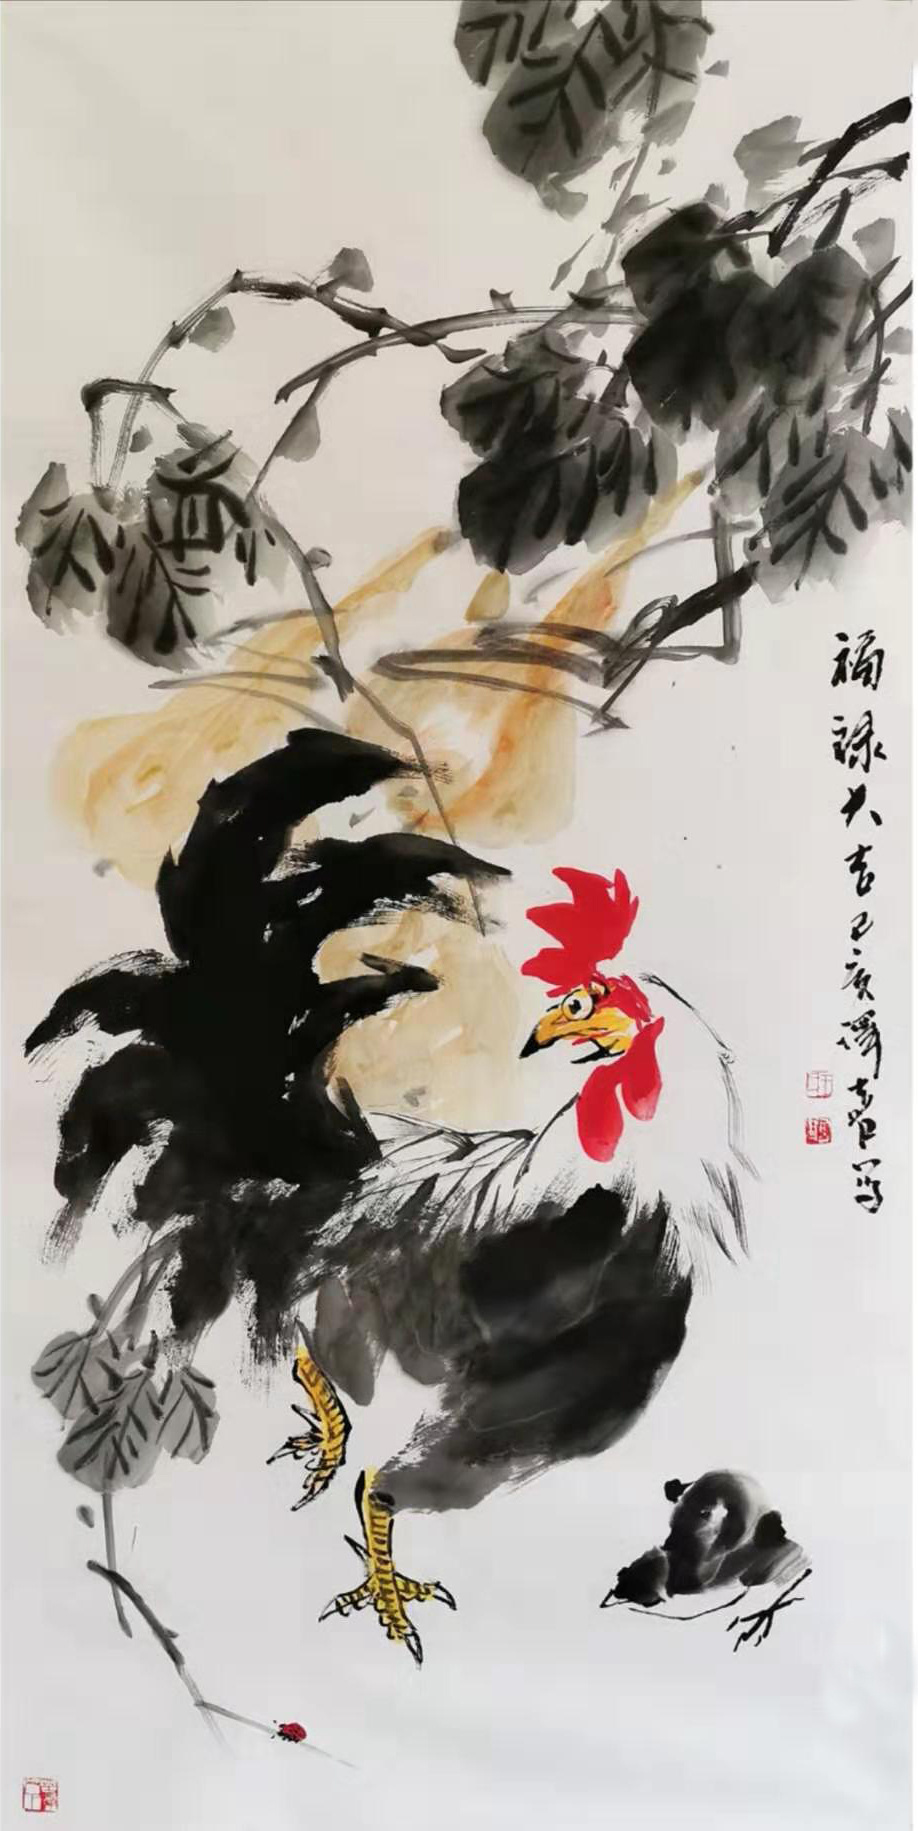 现代画鸡的画家鸡王图片